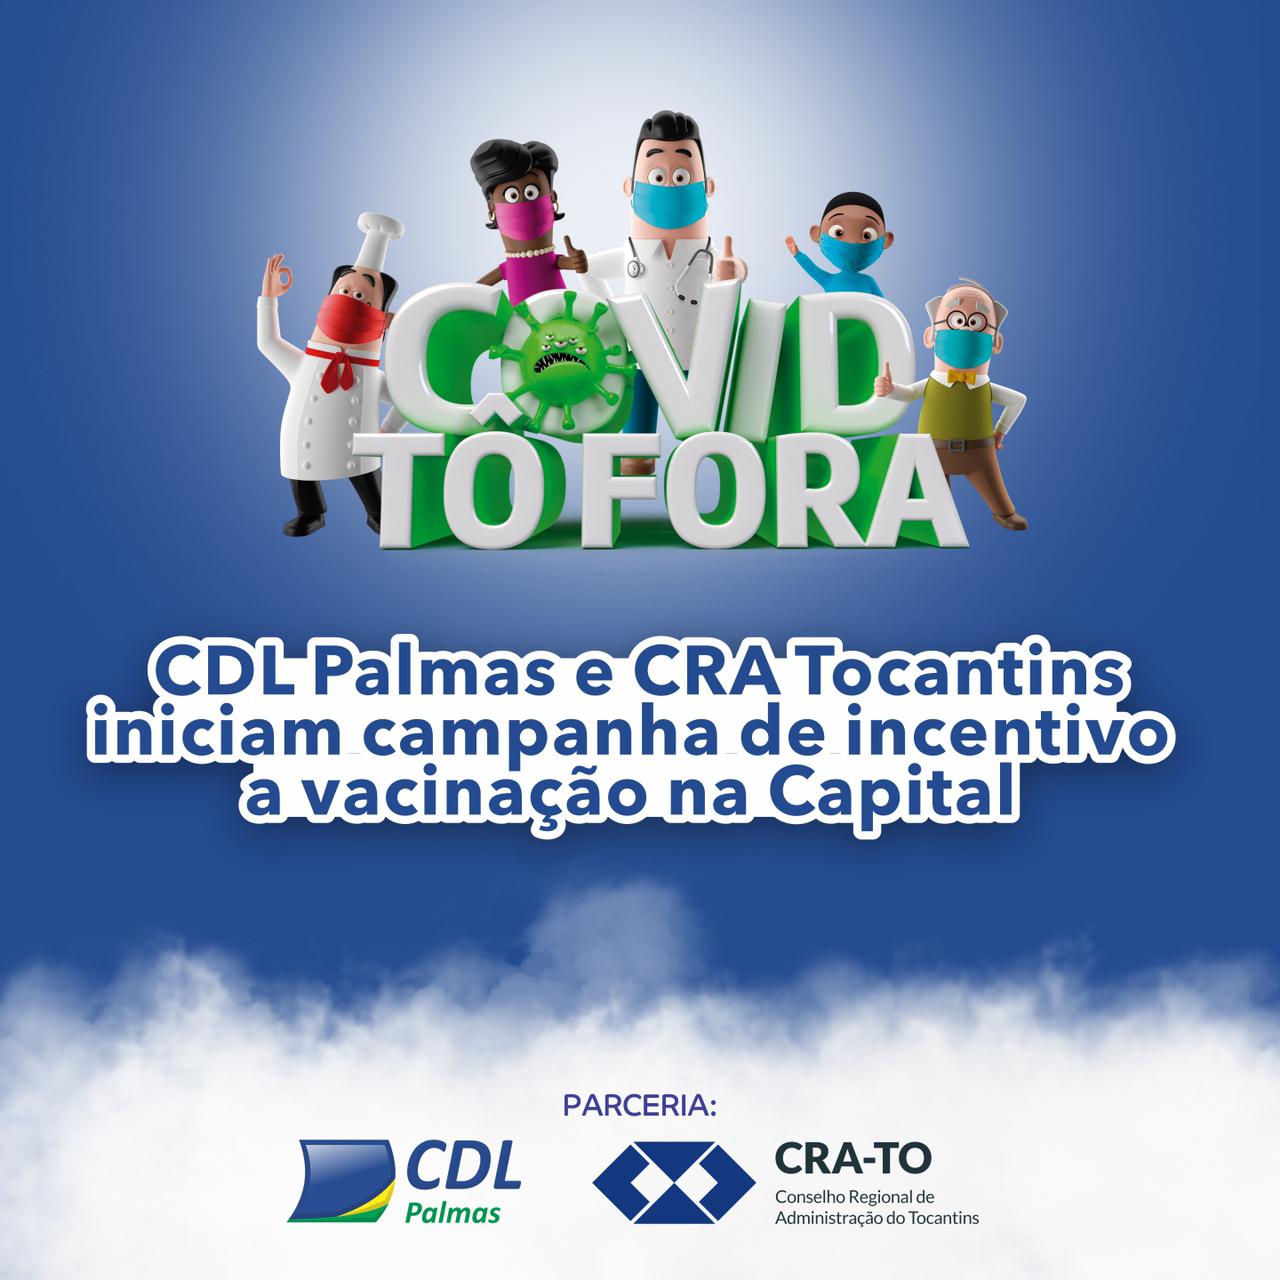 You are currently viewing CDL Palmas e CRA Tocantins iniciam campanha de incentivo a vacinação na Capital